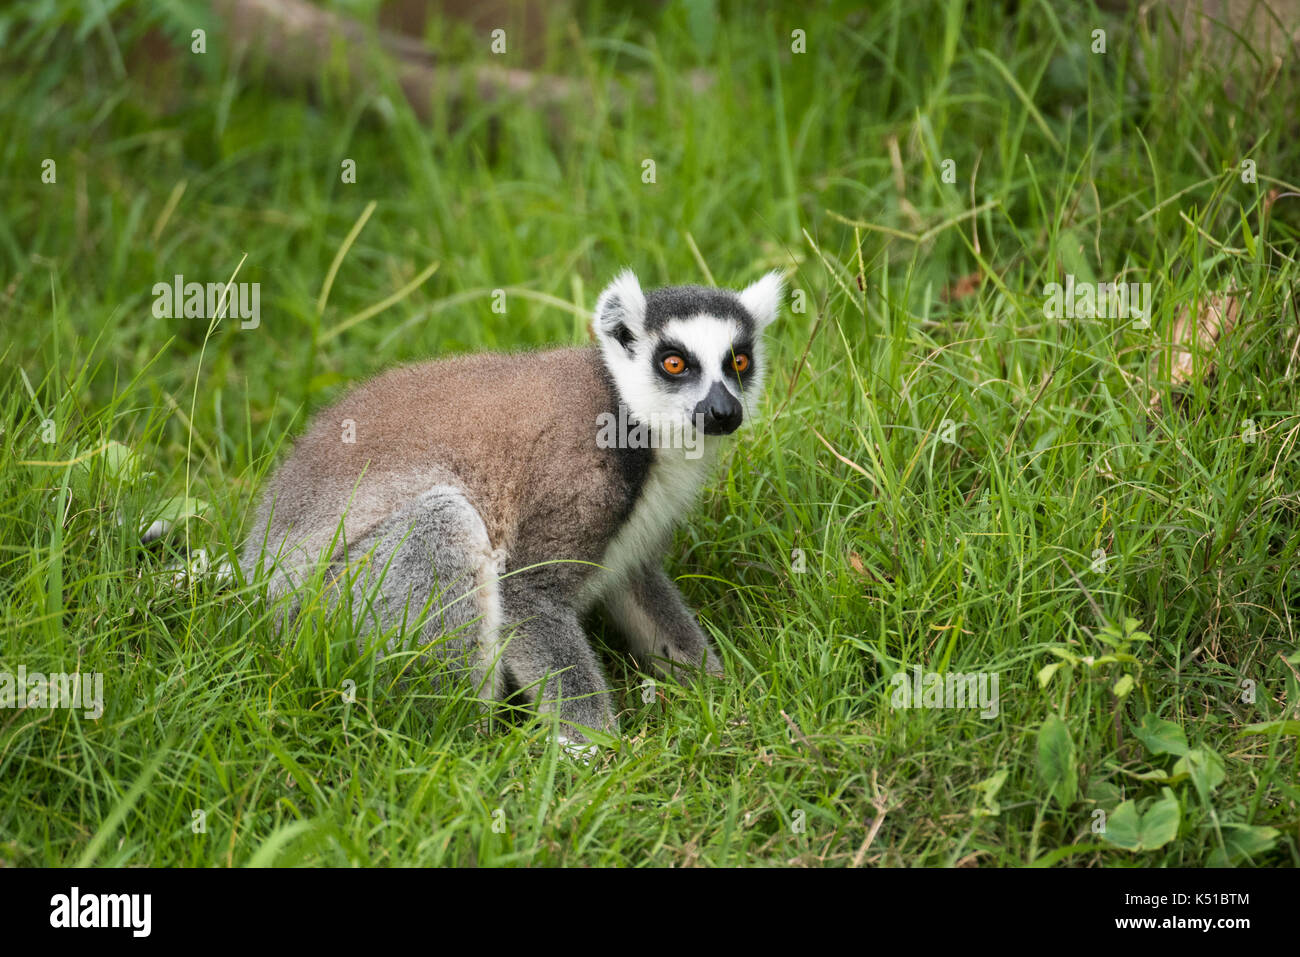 Ring-tailed lemur, Lemur catta, Botanical and Zoological Garden of Tsimbazaza, Antananarivo, Madagascar Stock Photo